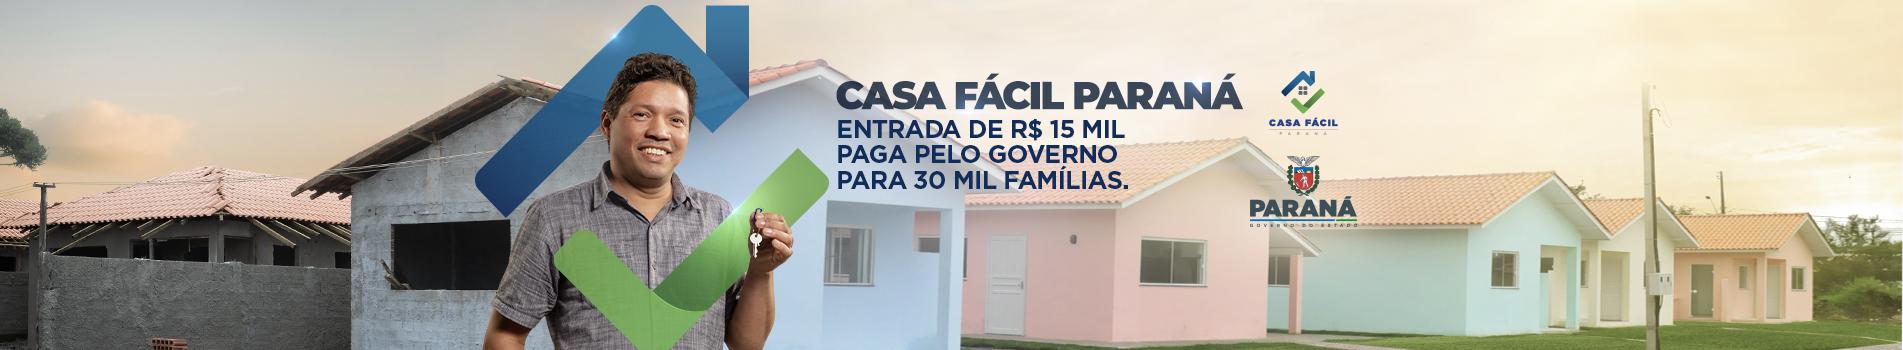 Casa Fácil Paraná - Valor de Entrada